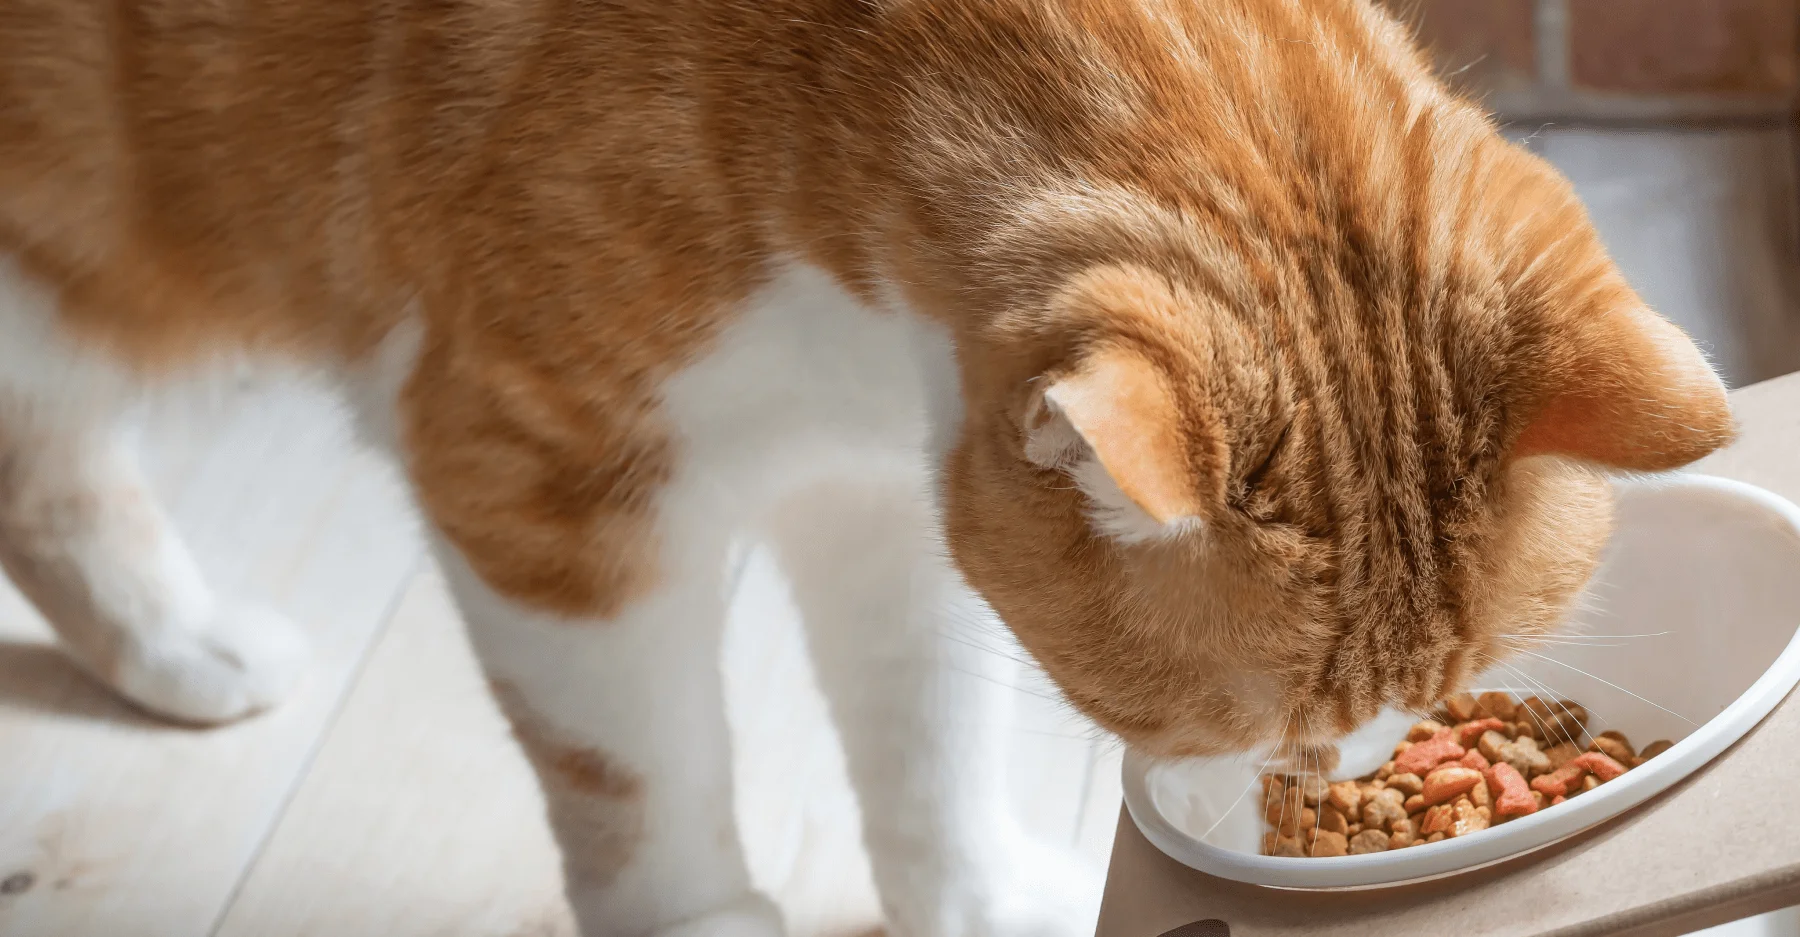 Сбалансированное питание необходимо для здоровья кошки